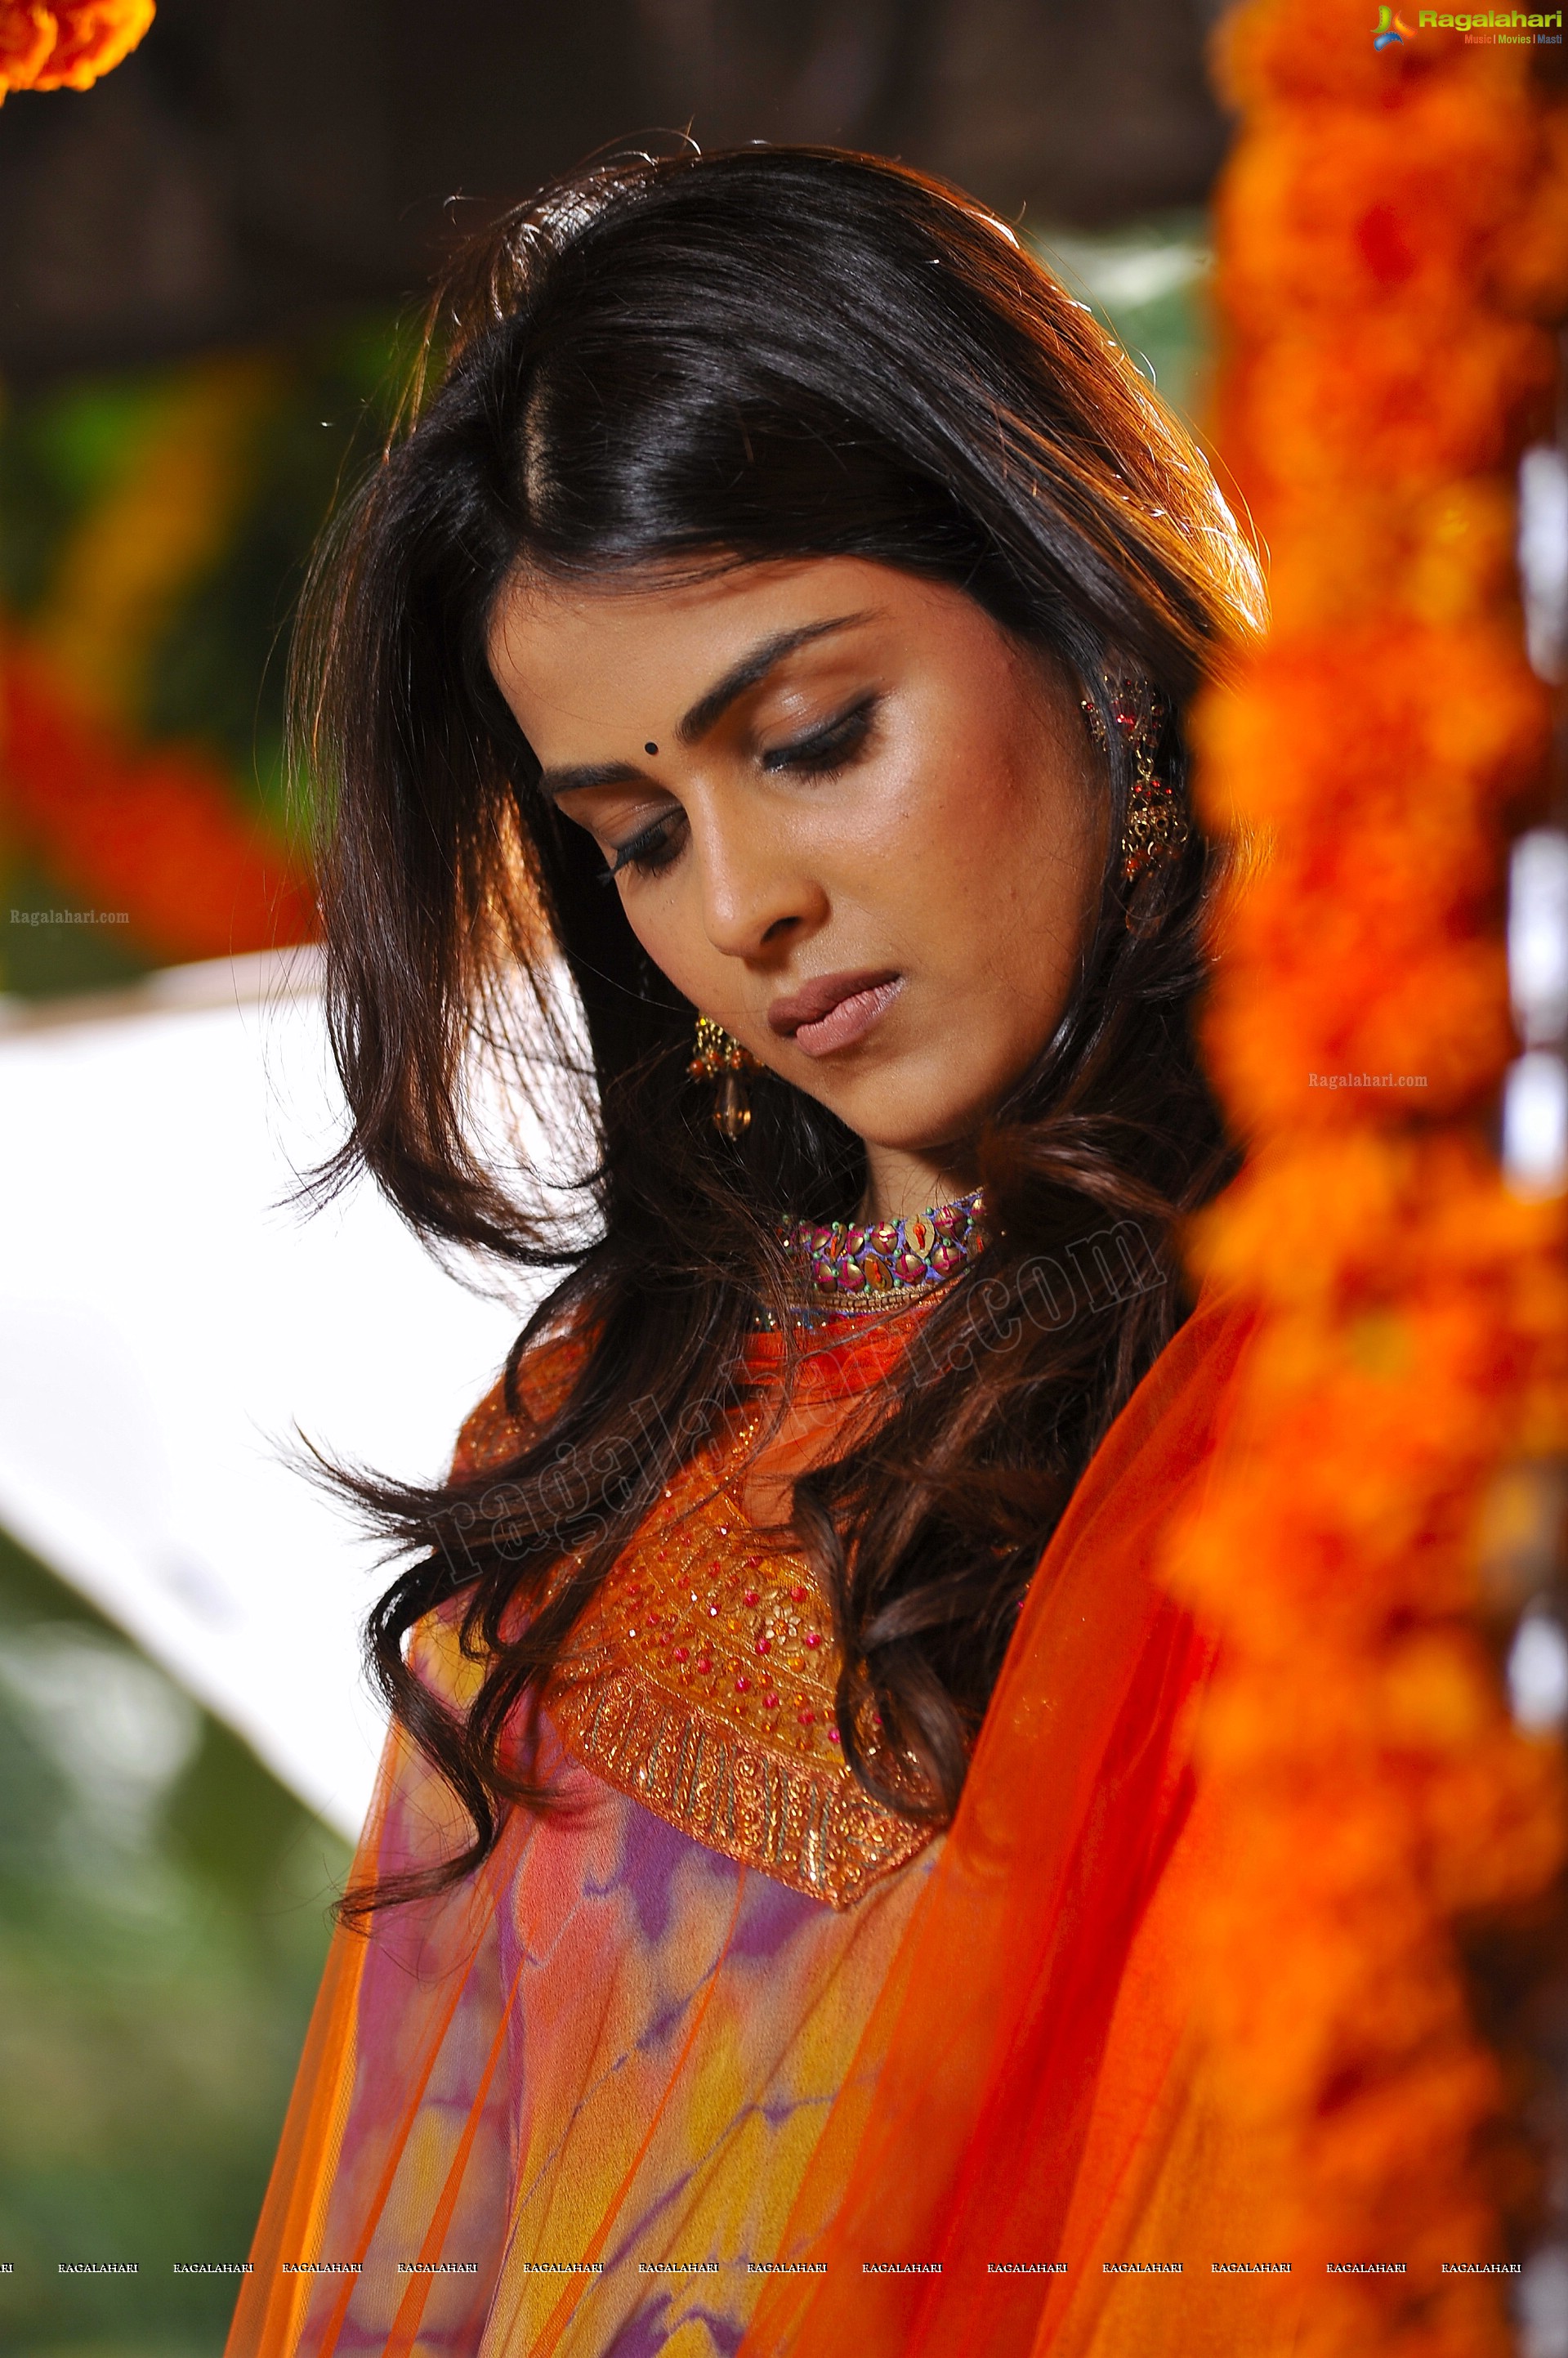 genelia hd wallpaper,haar,orange,fotoshooting,fotografie,sari